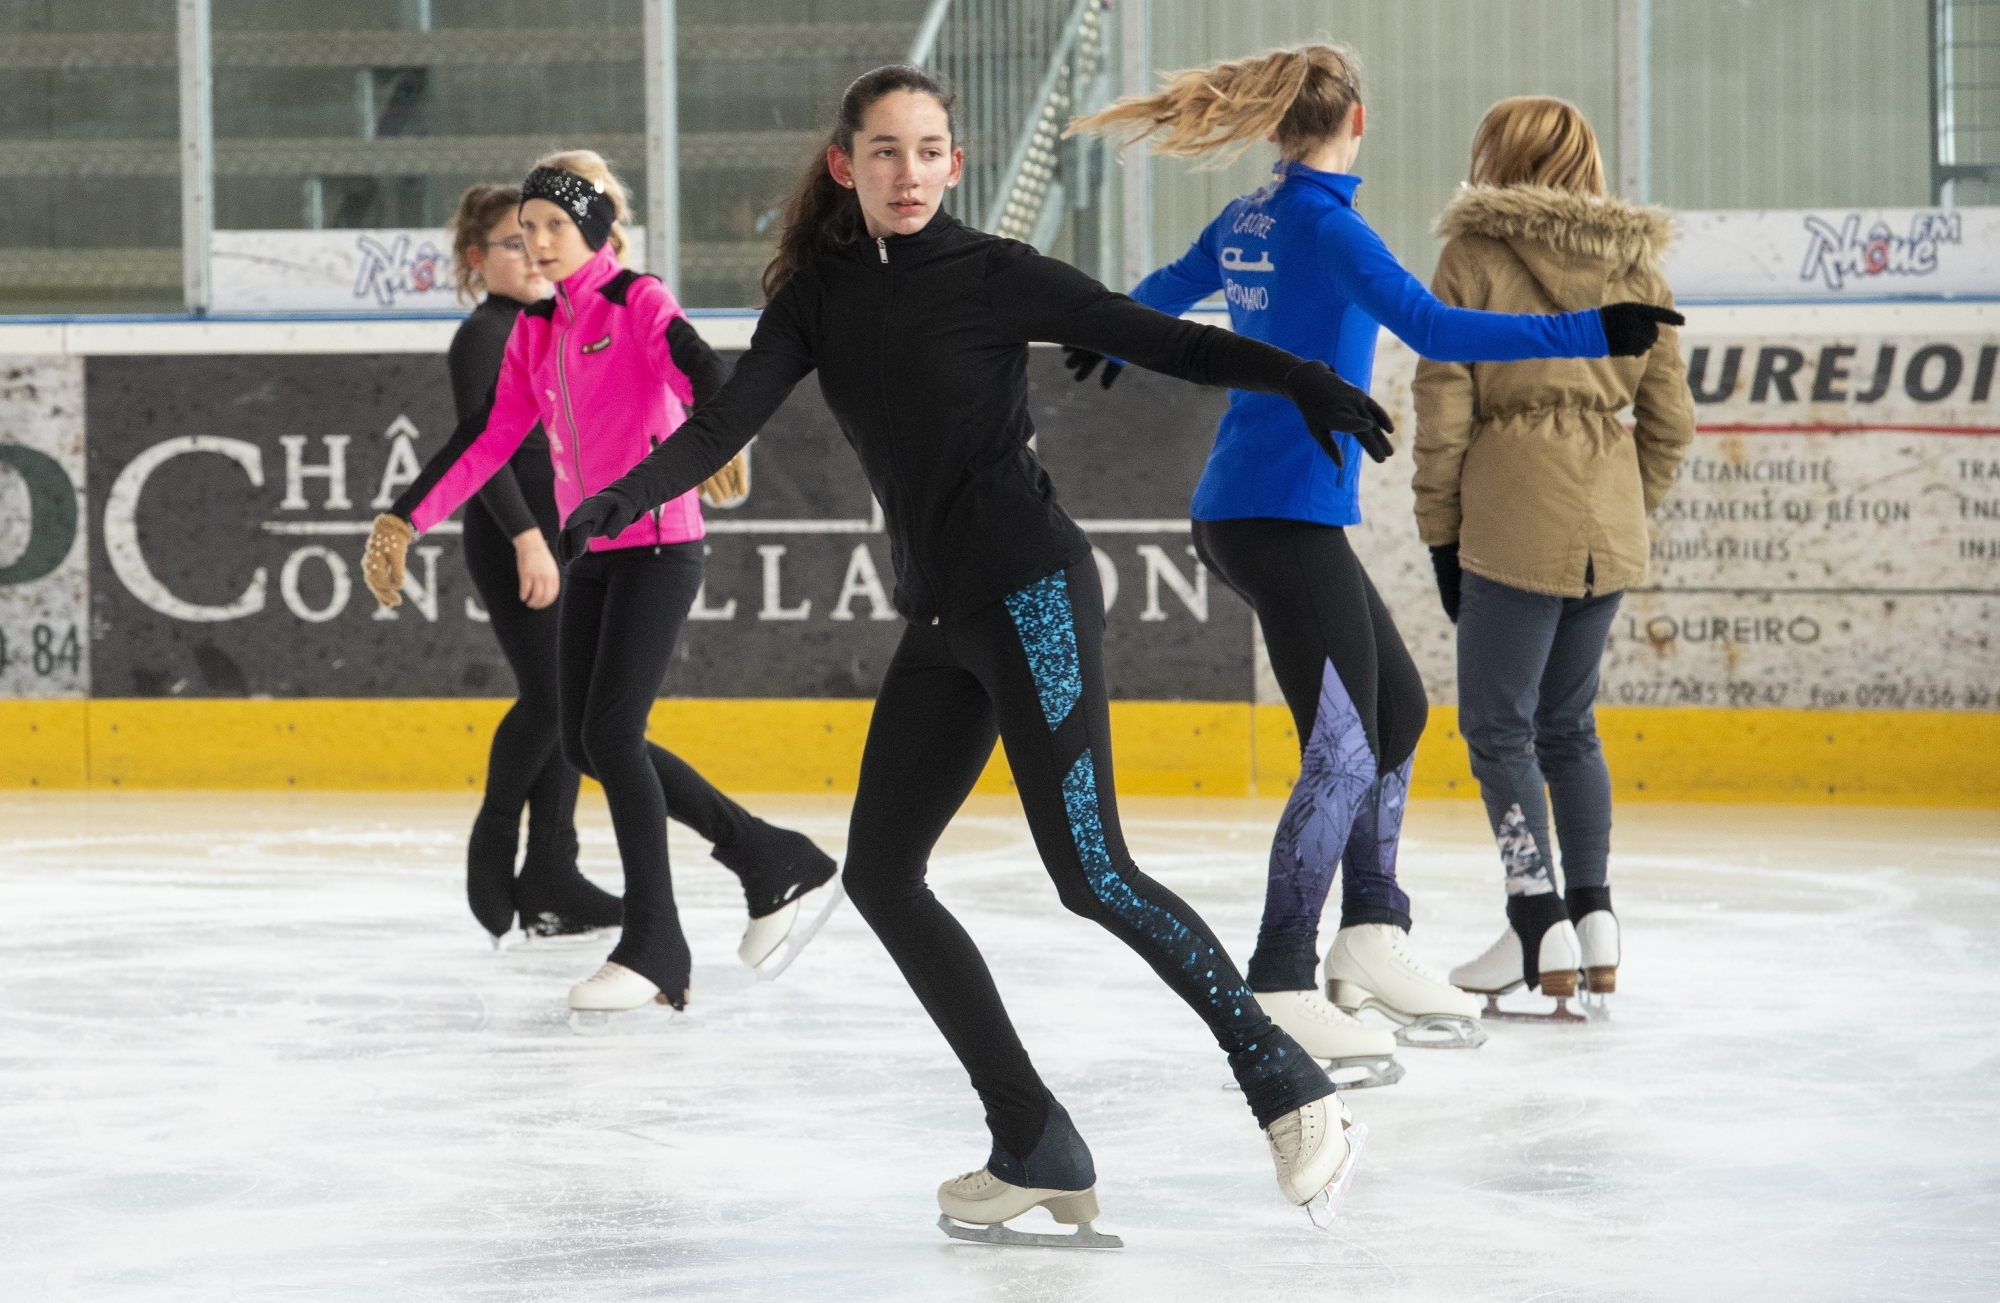 Le Valais compte six clubs de patinage artistique, tous situés dans la partie francophone du canton.